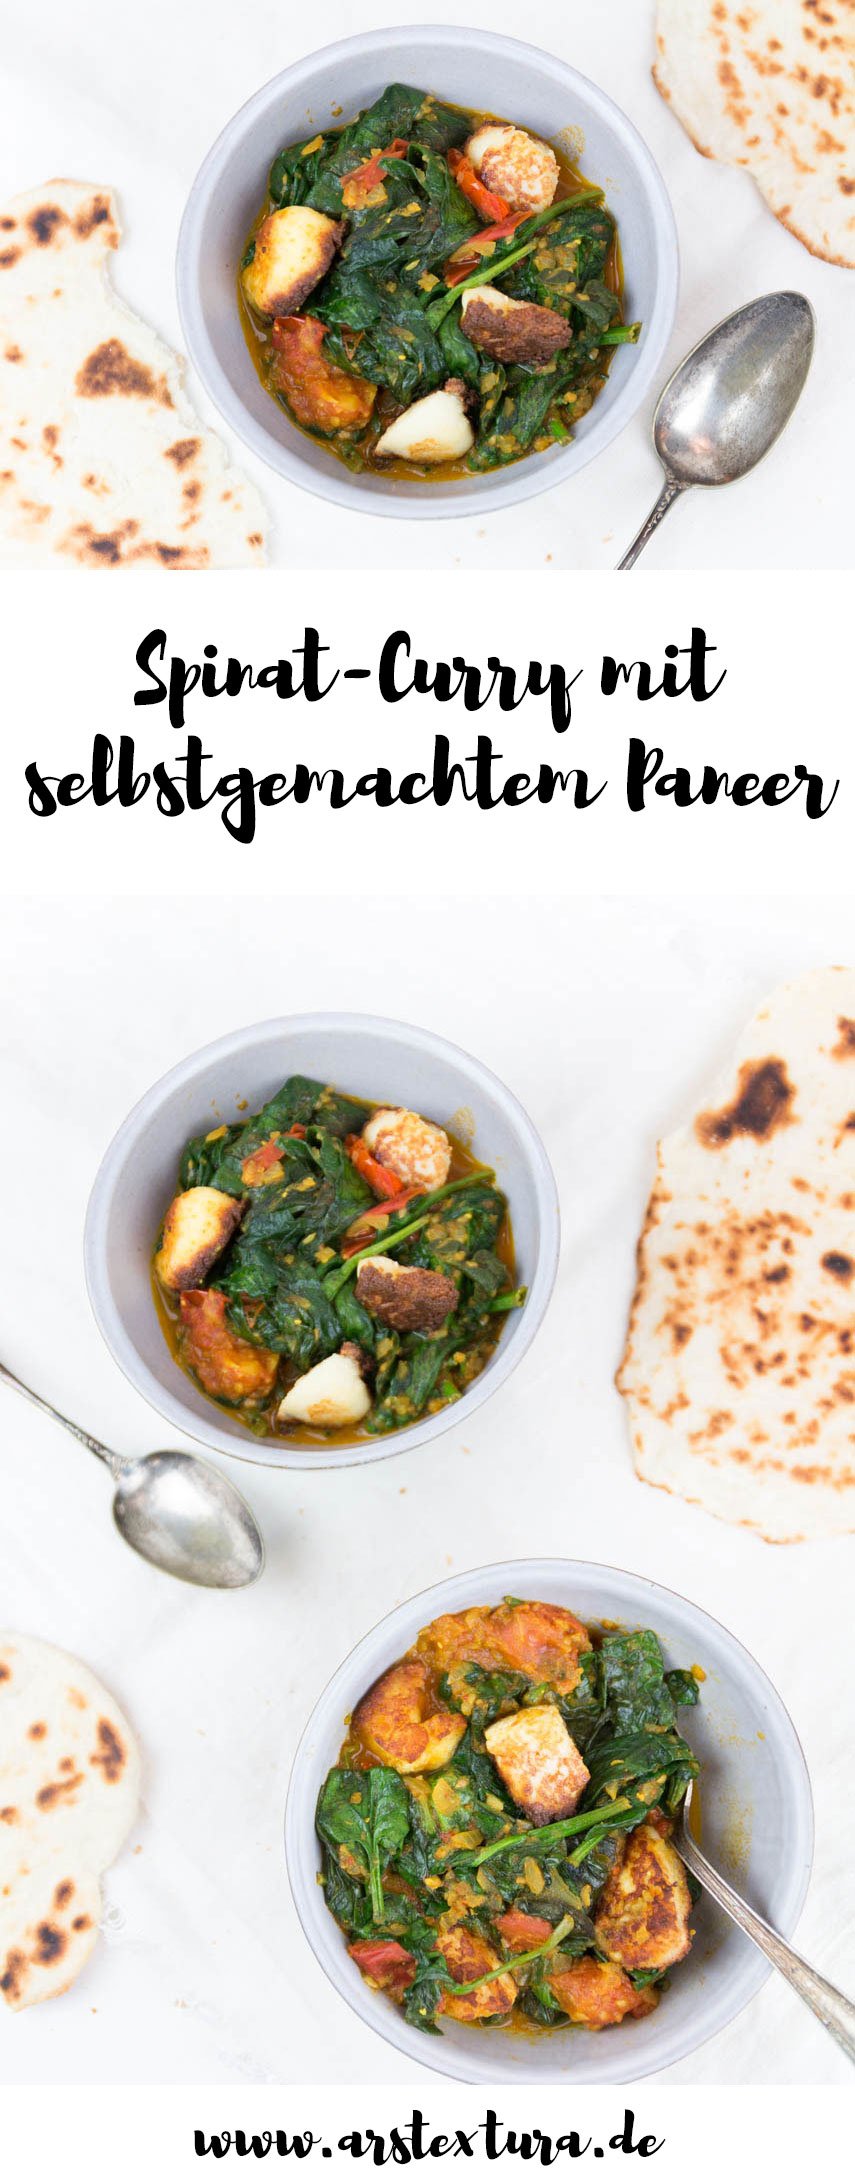 Spinat Curry mit selbstgemachtem Paneer - vegetarisches Gericht